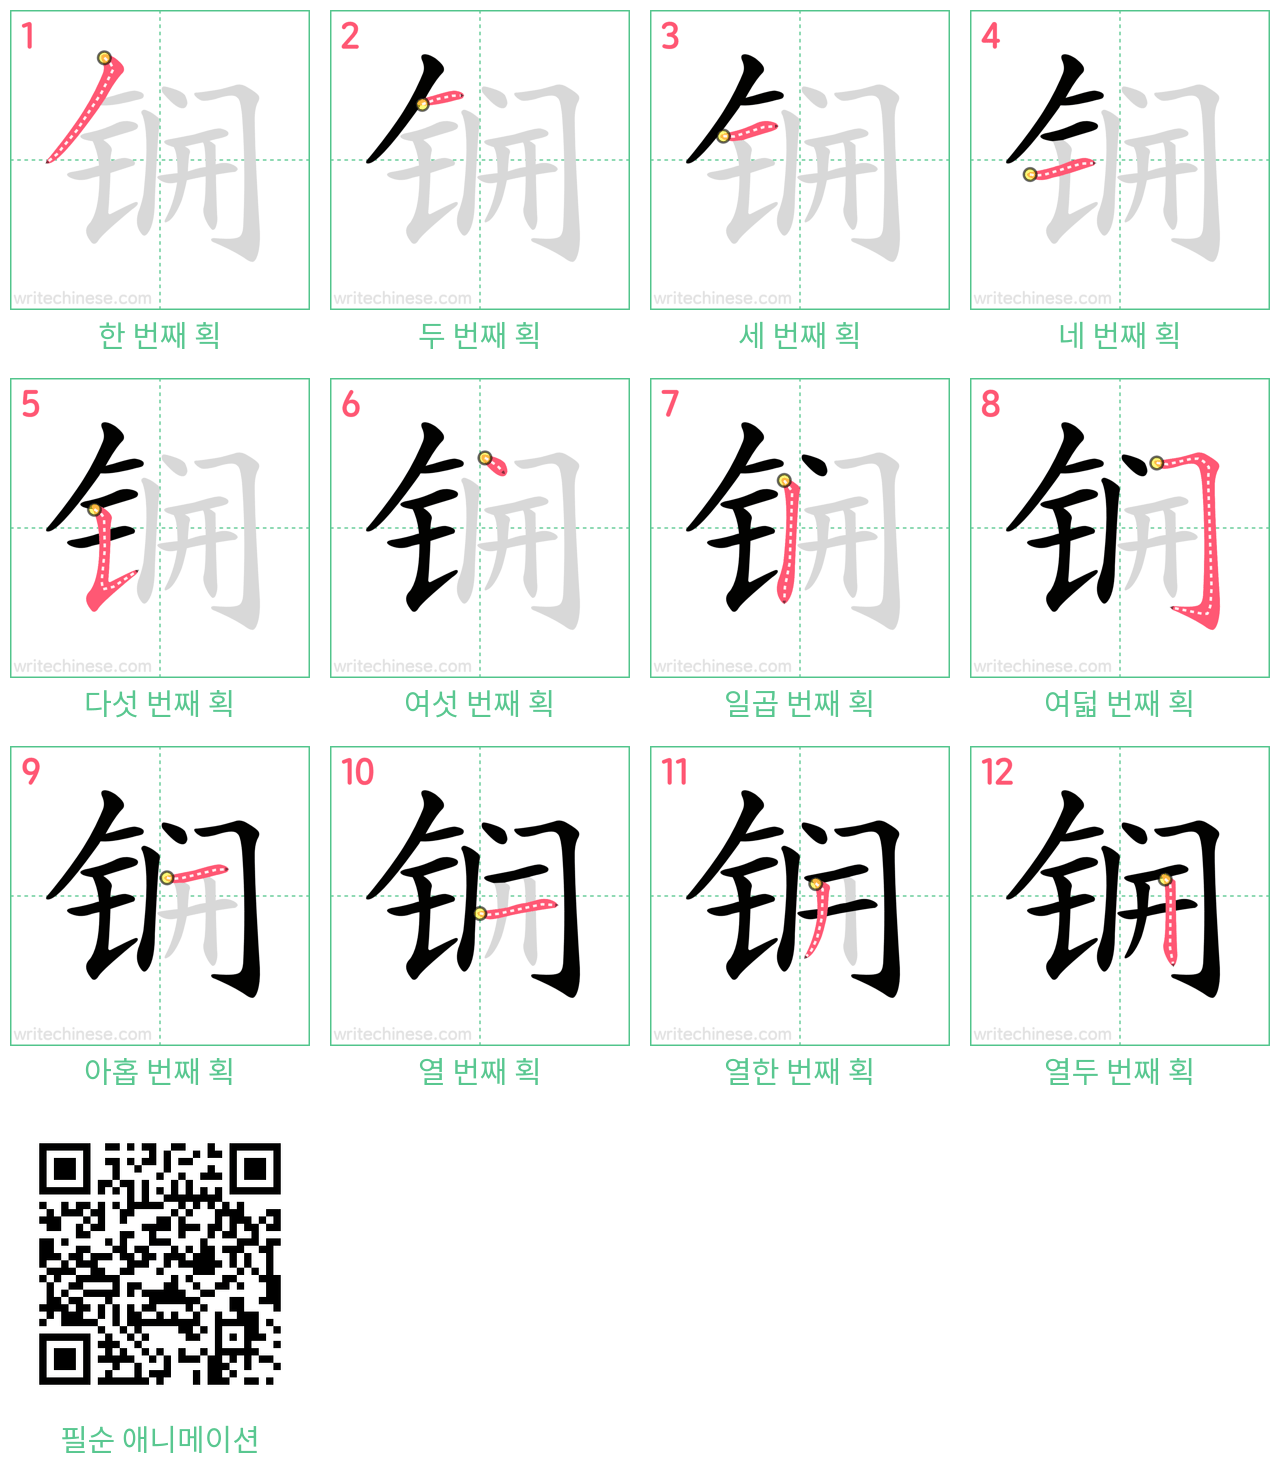 锎 step-by-step stroke order diagrams